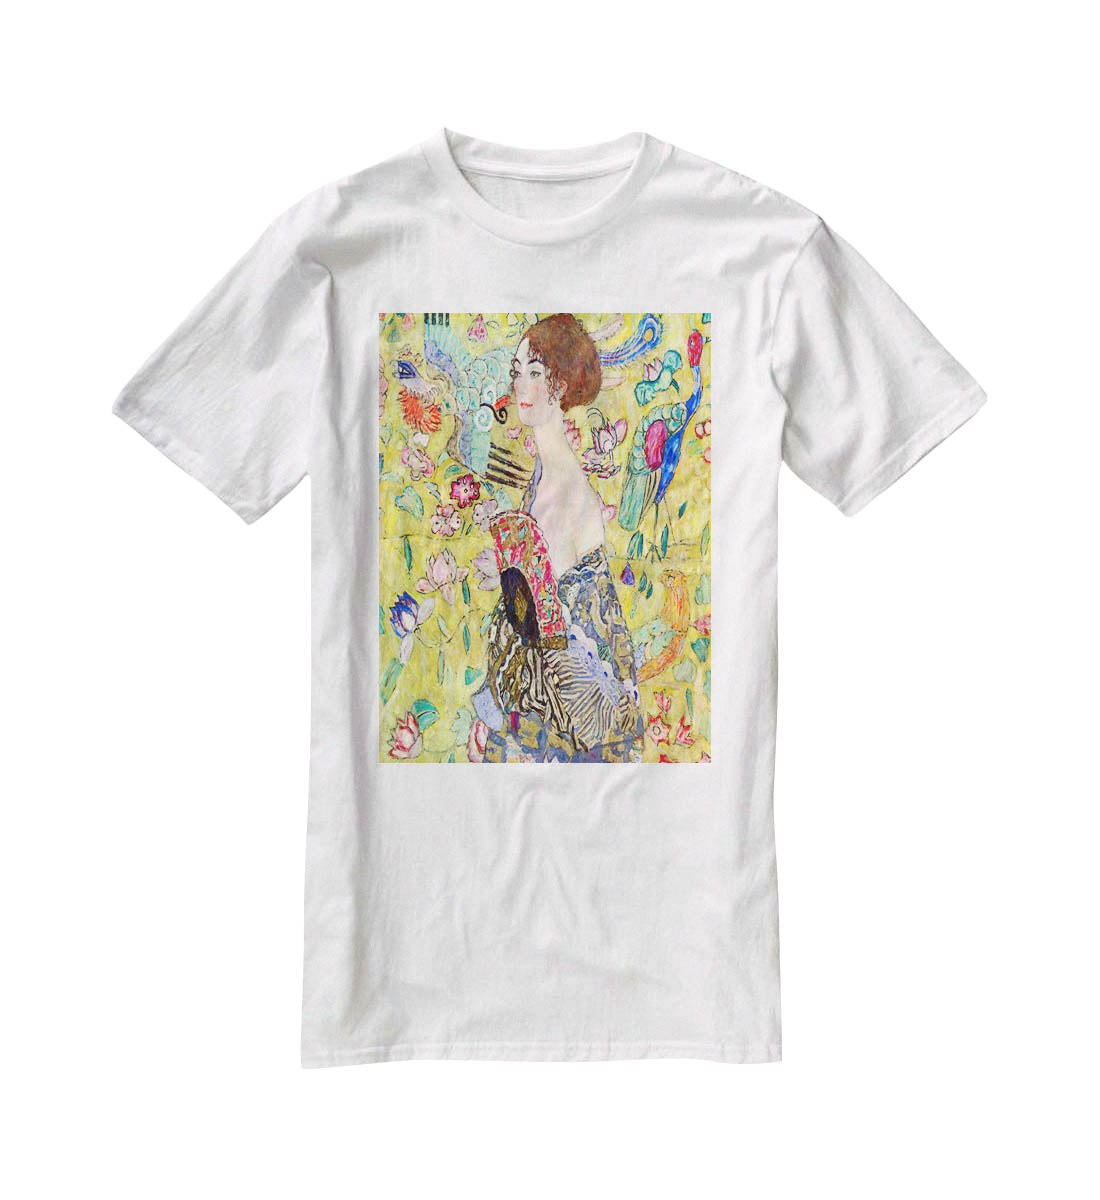 Lady with fan by Klimt T-Shirt - Canvas Art Rocks - 5